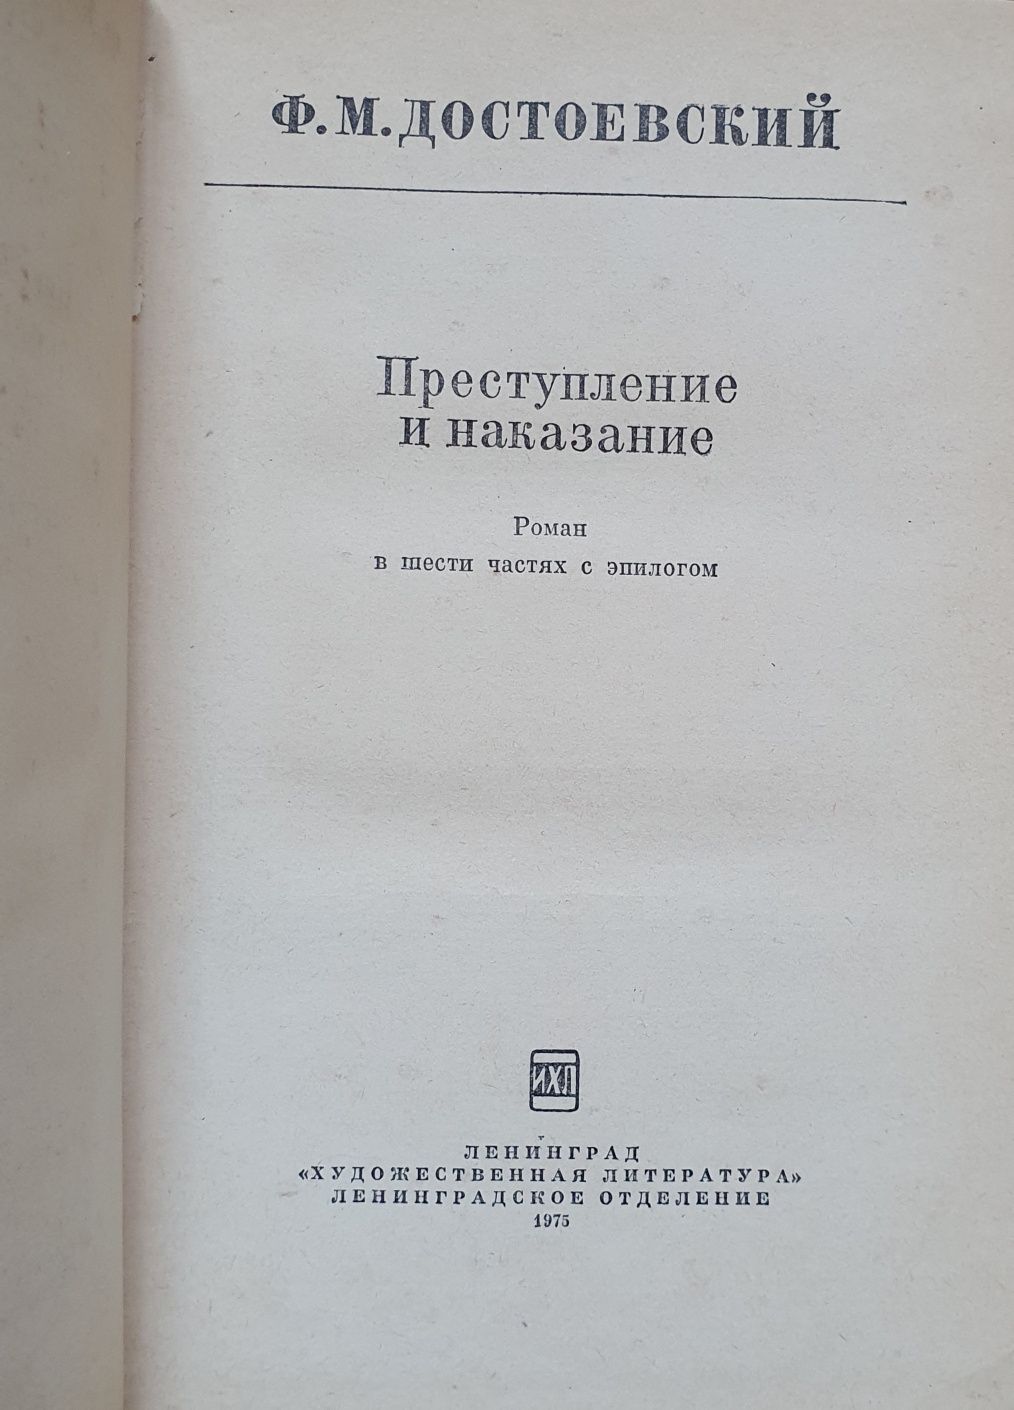 Роман Ф. Достоевский "Преступление и наказание"